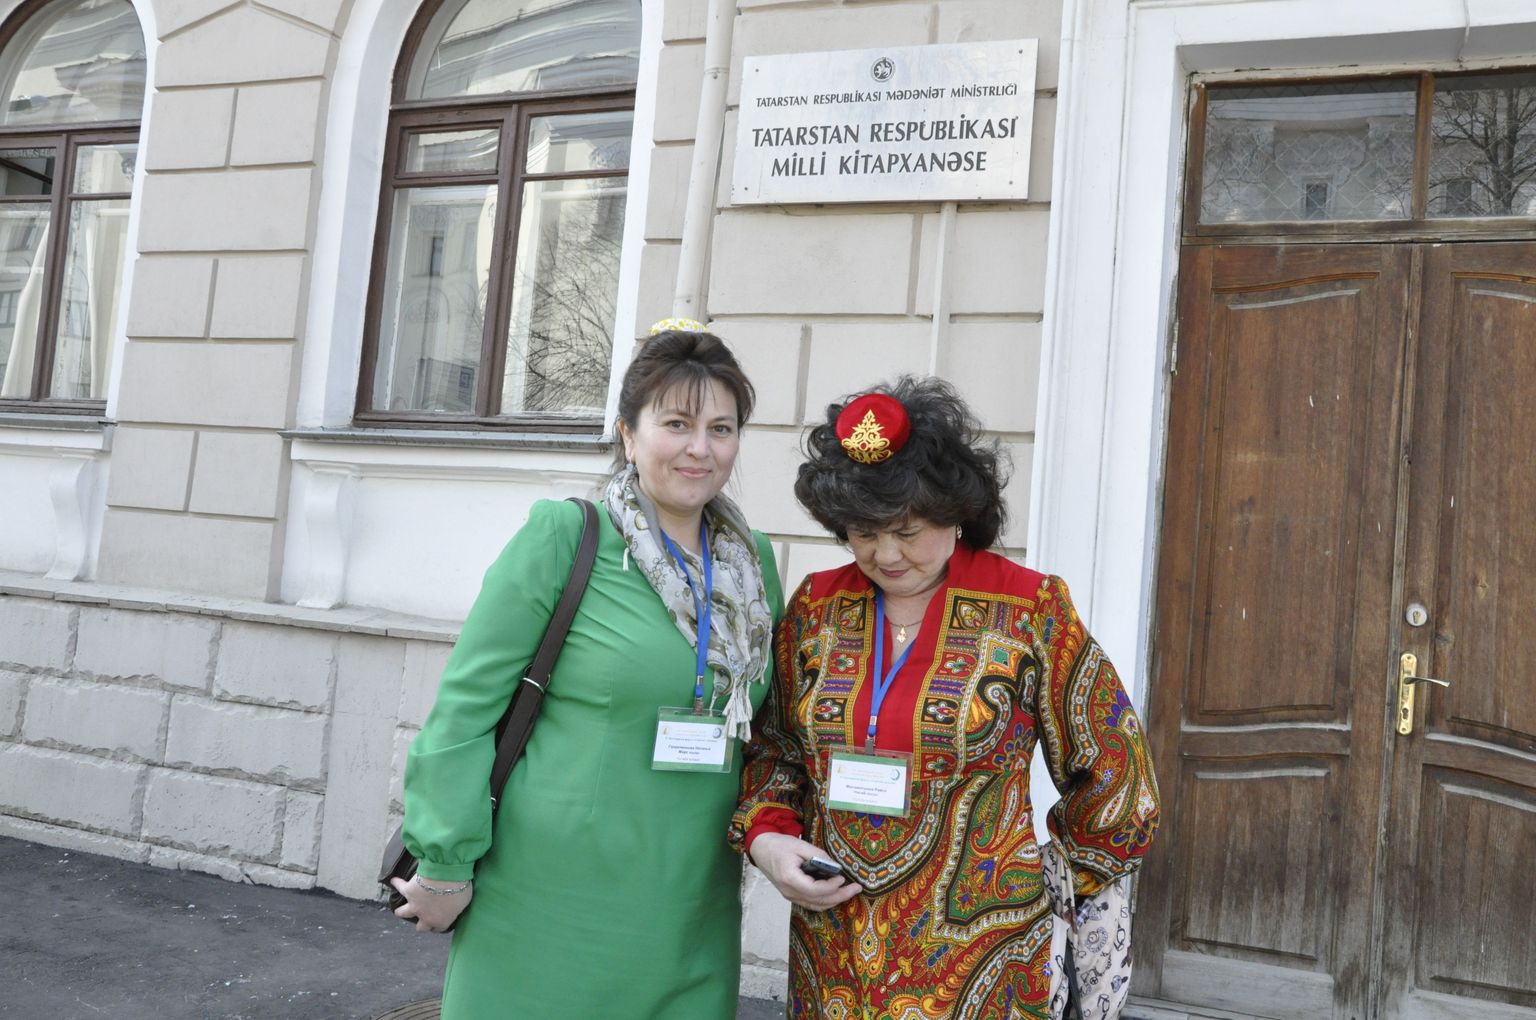 Rahvuslike tähtpäevade puhul püüavad eneseteadlikumad tatari naised  kanda vähemalt rahvuslikku naiste peakatet.  Kaks tatari naist rahvuspoeet Ğabdulla Tuqay 130 sünniaastapäeva pidustusel Kaasani kesklinnas. Taustal paistab ka suhteliselt harva Kaasanis silma hakkav ladina tähestikus kirjutatud tatarikeelne asutuse nimi – Tatari rahvusraamatukogu üks hoonetest.